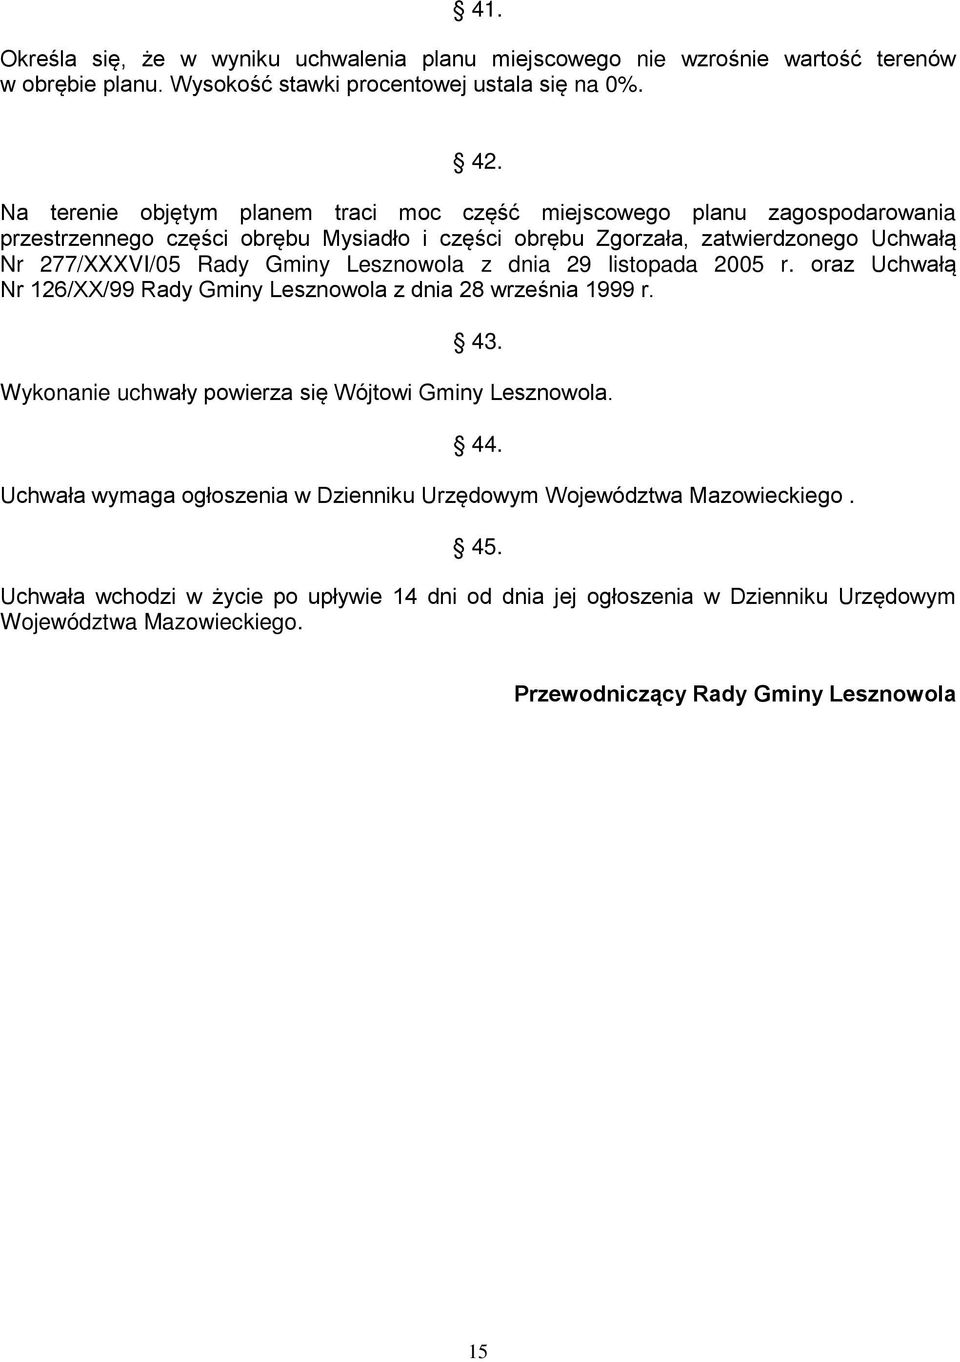 Gminy Lesznowola z dnia 29 listopada 2005 r. oraz Uchwałą Nr 126/XX/99 Rady Gminy Lesznowola z dnia 28 września 1999 r. 43. Wykonanie uchwały powierza się Wójtowi Gminy Lesznowola. 44.